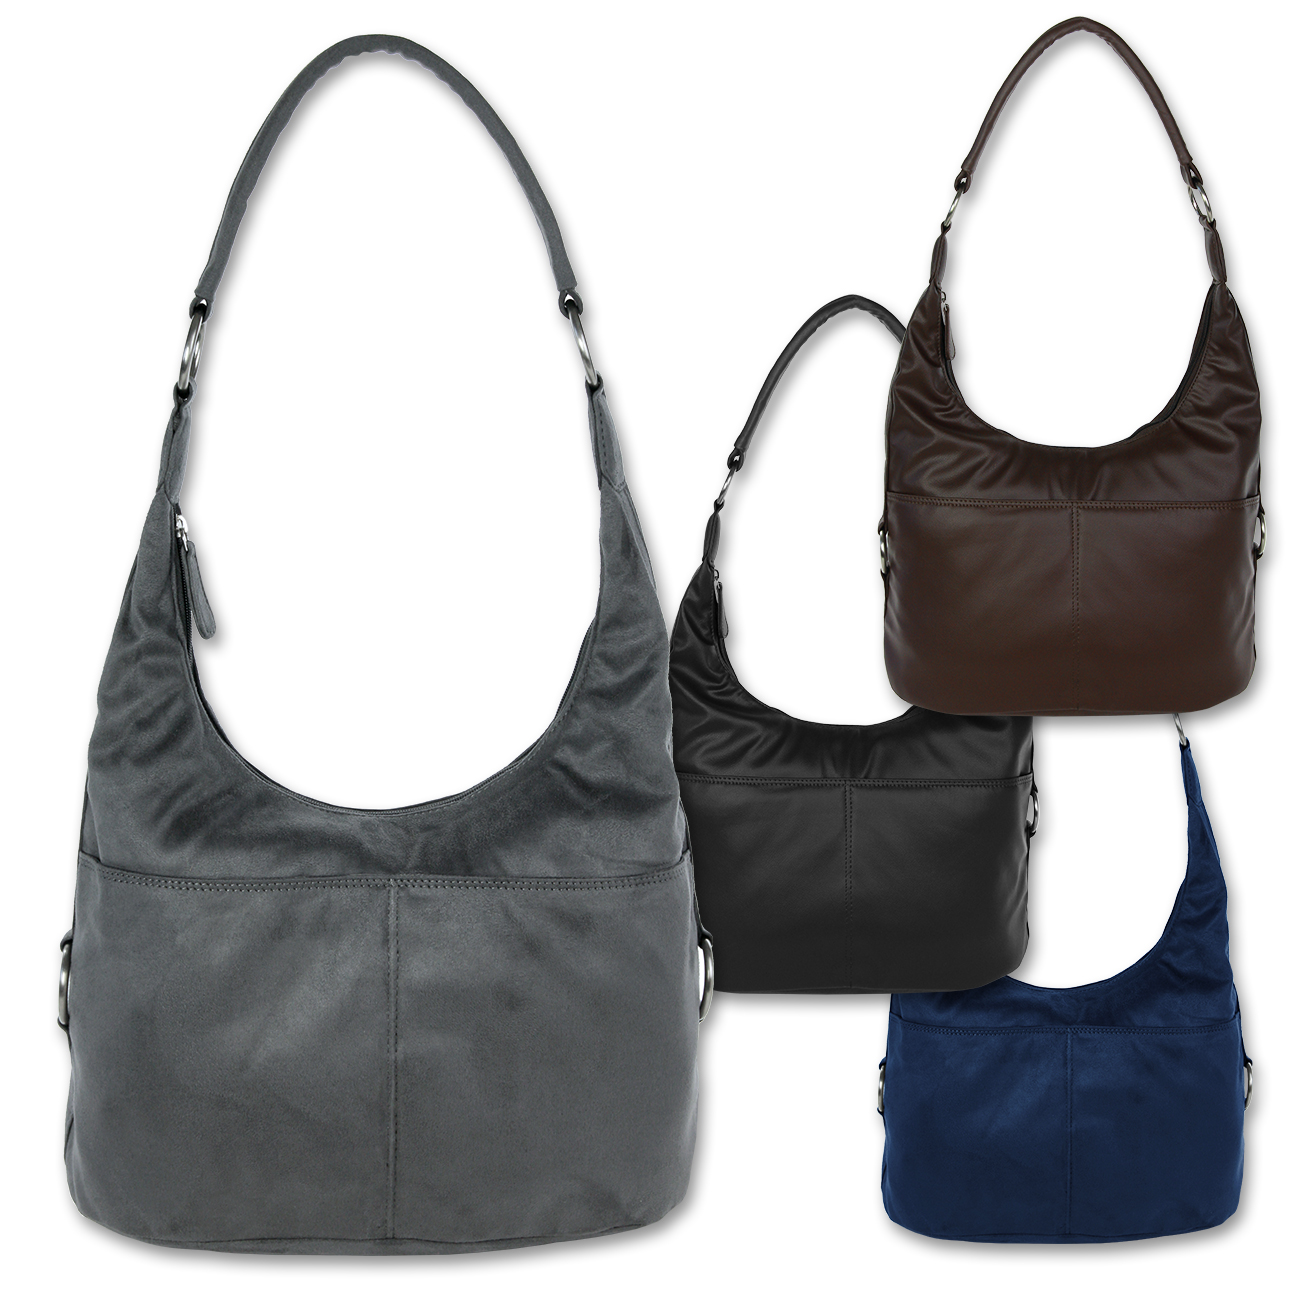 Schultertasche Damen Handtasche Hobo Style Umhängetasche Farbwahl OTS100X